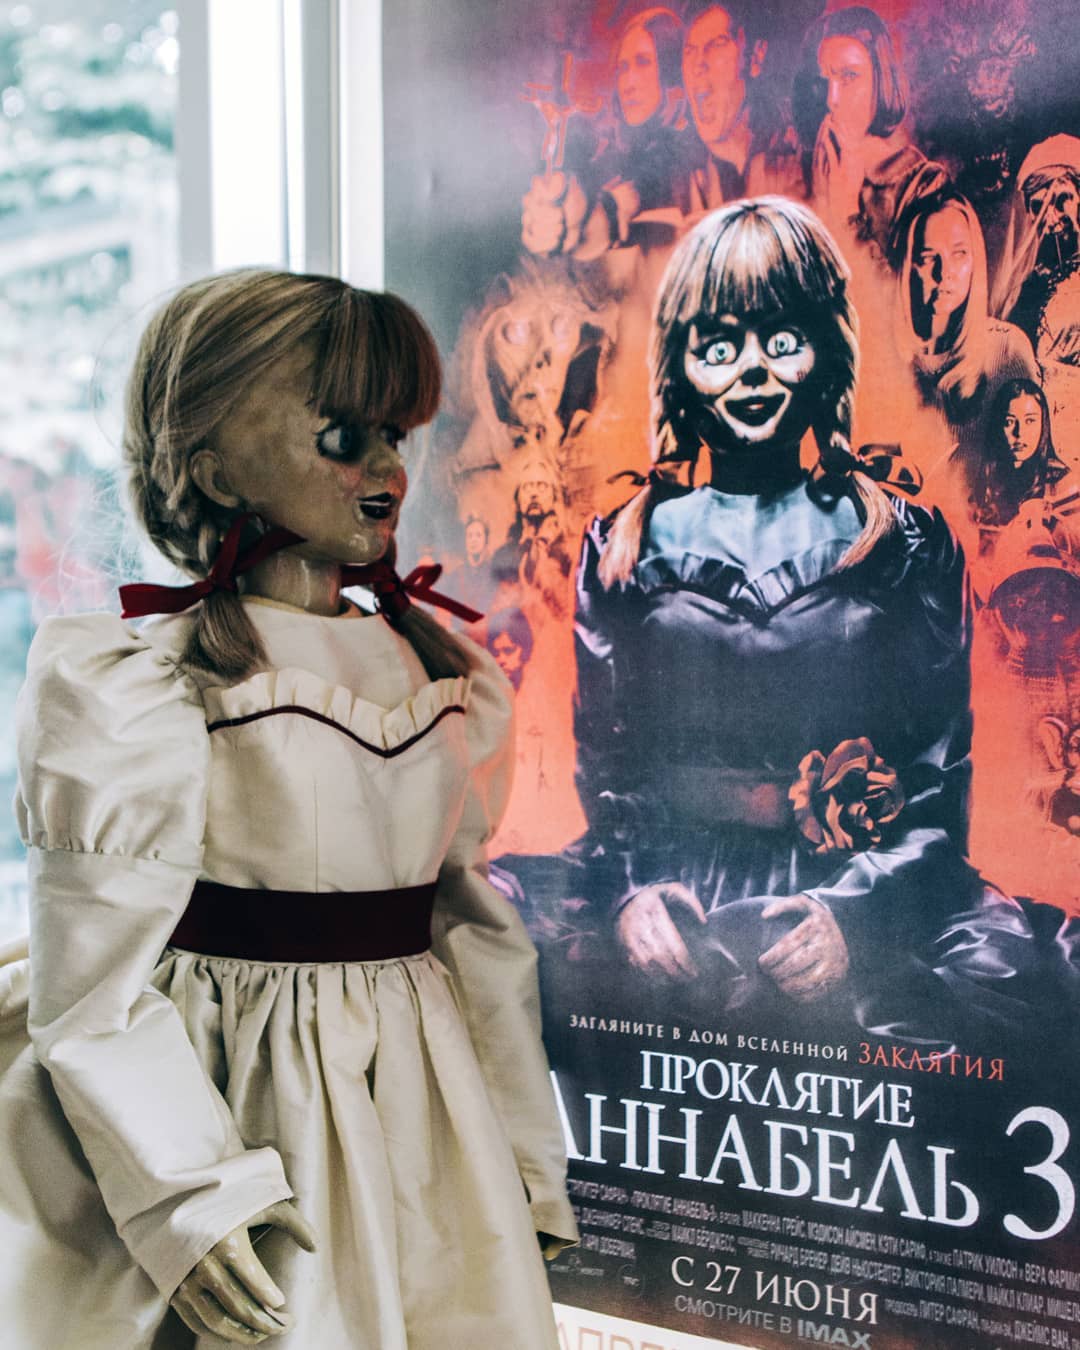 Перед премьерой «Проклятия Аннабель 3» демоническая кукла завела аккаунт в соцсетях - 06